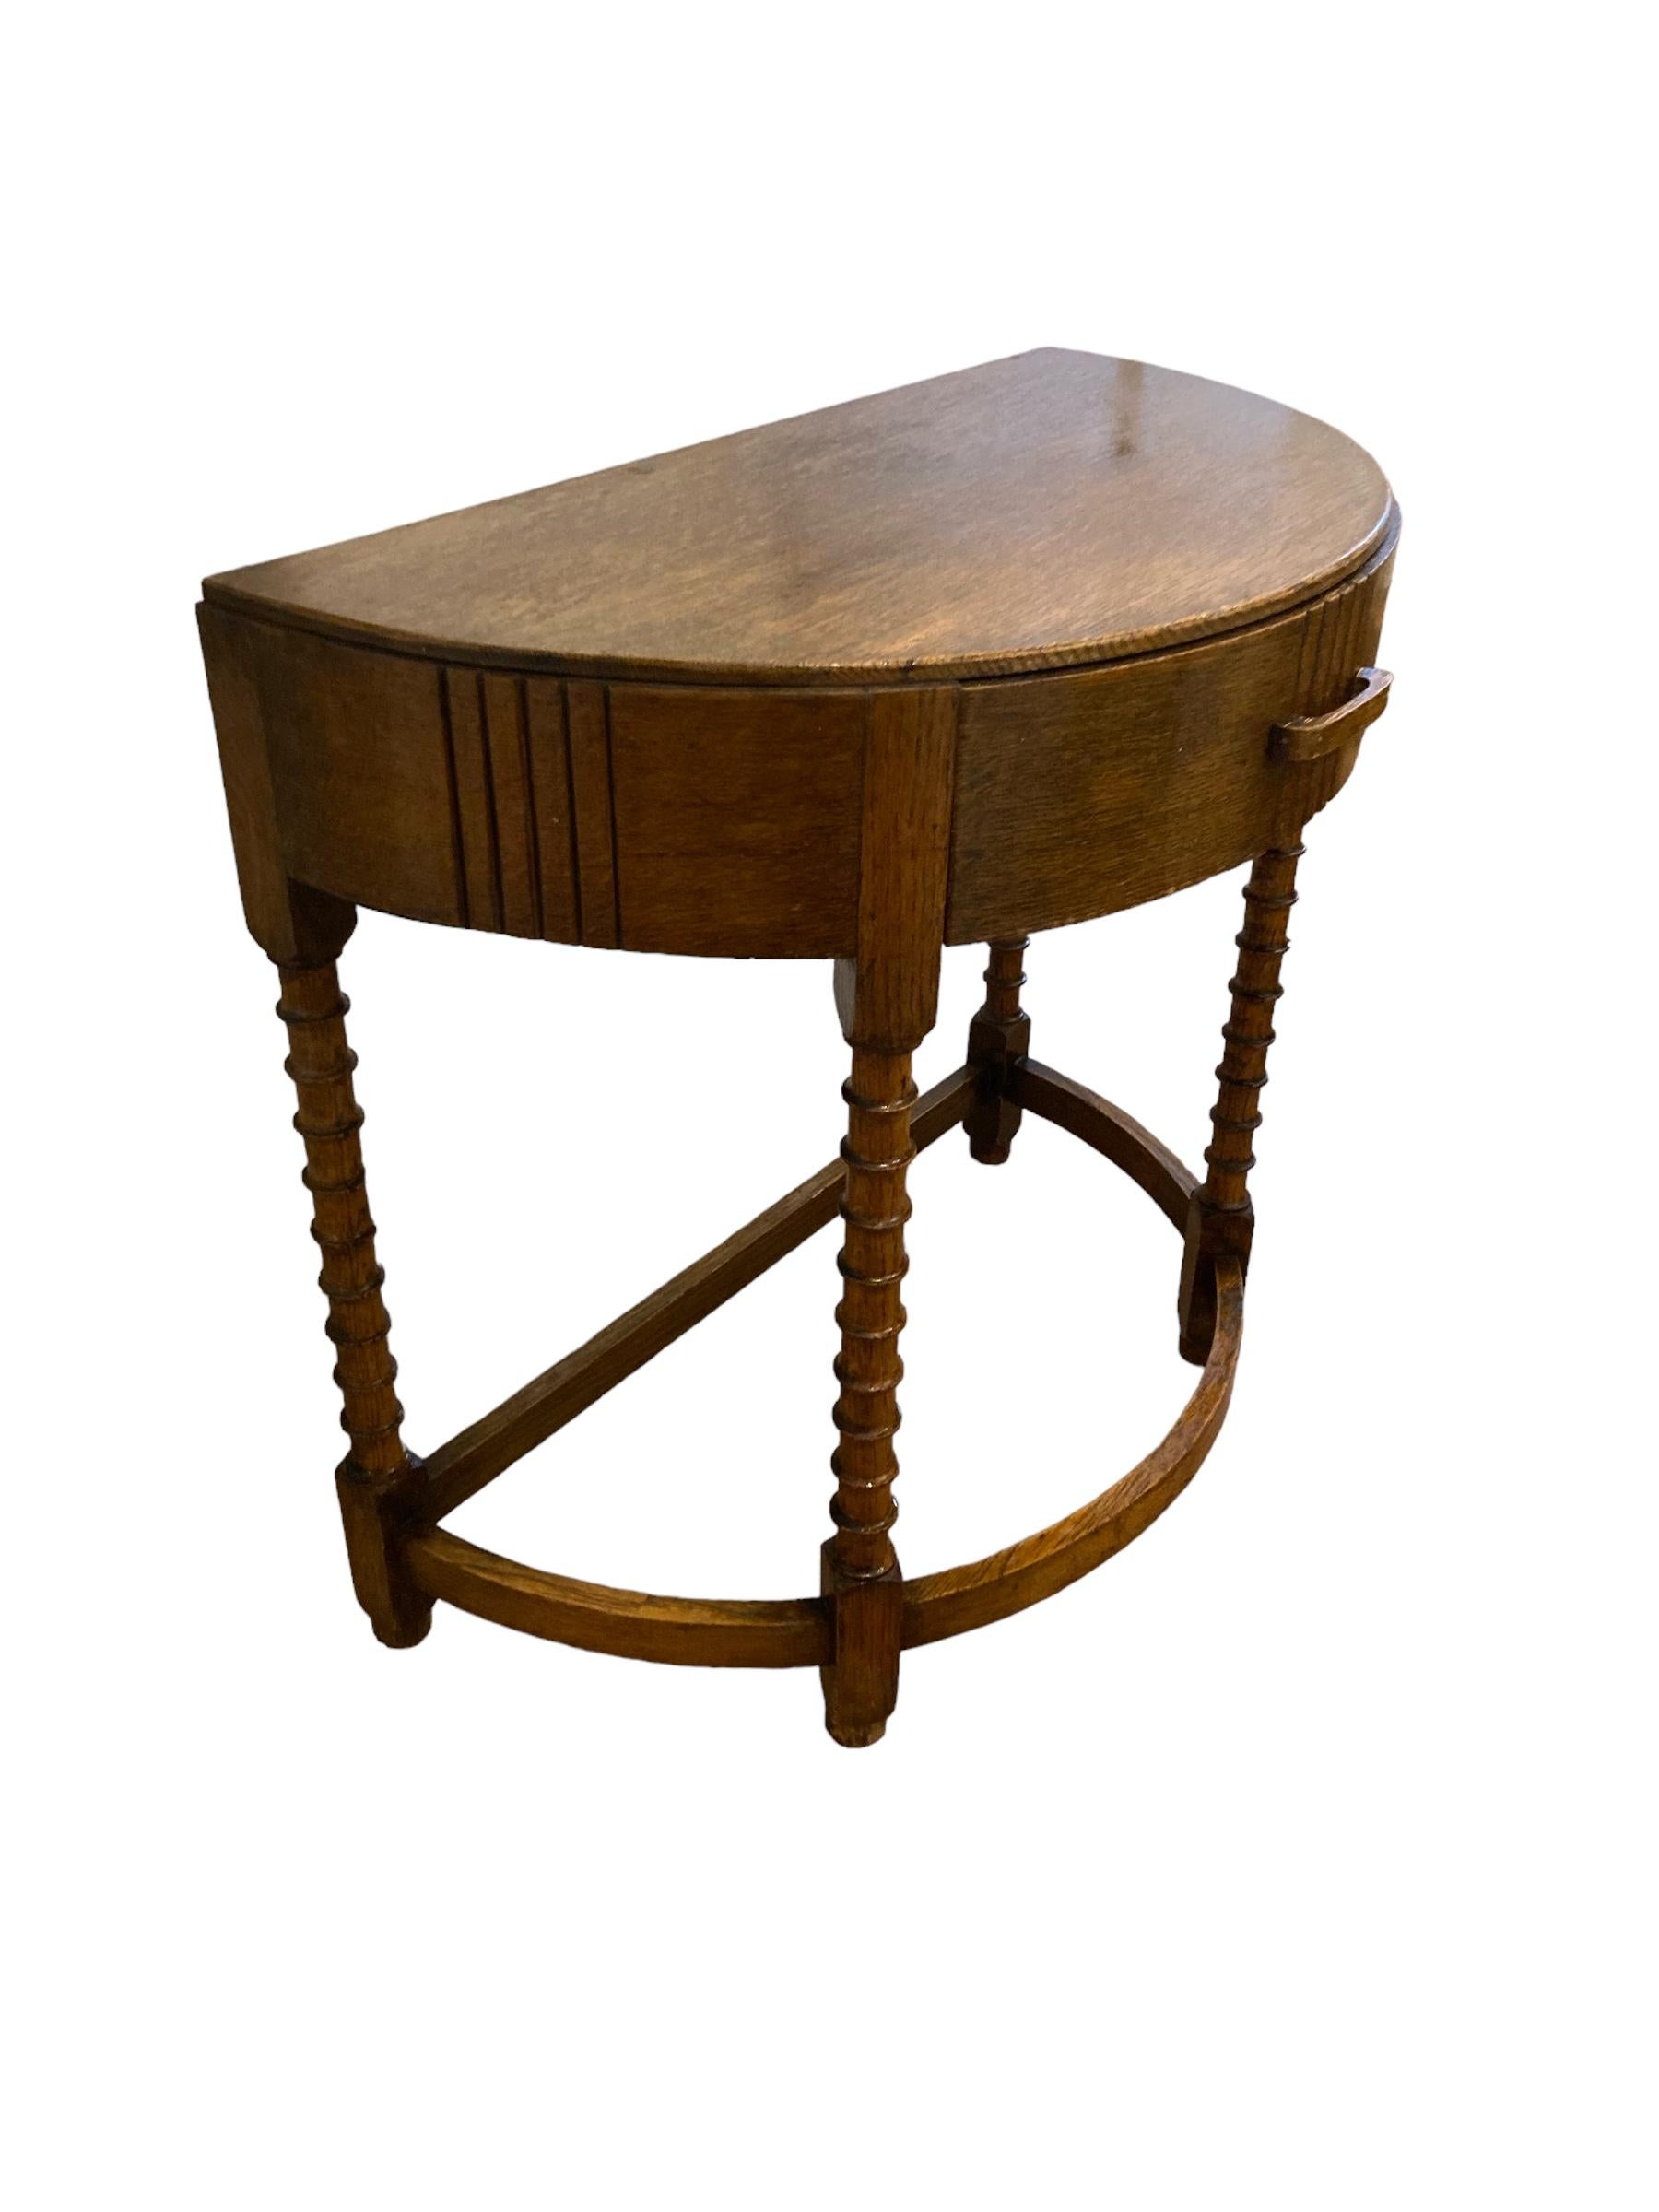 Unser eleganter Art Deco Half Moon Tisch mit einer wunderschön gearbeiteten Holzplatte und vier geschnitzten, stabilen Beinen, einer geschwungenen Streckbank und einer einzelnen Schublade ist ein vielseitiges Möbelstück, das Funktionalität mit Stil